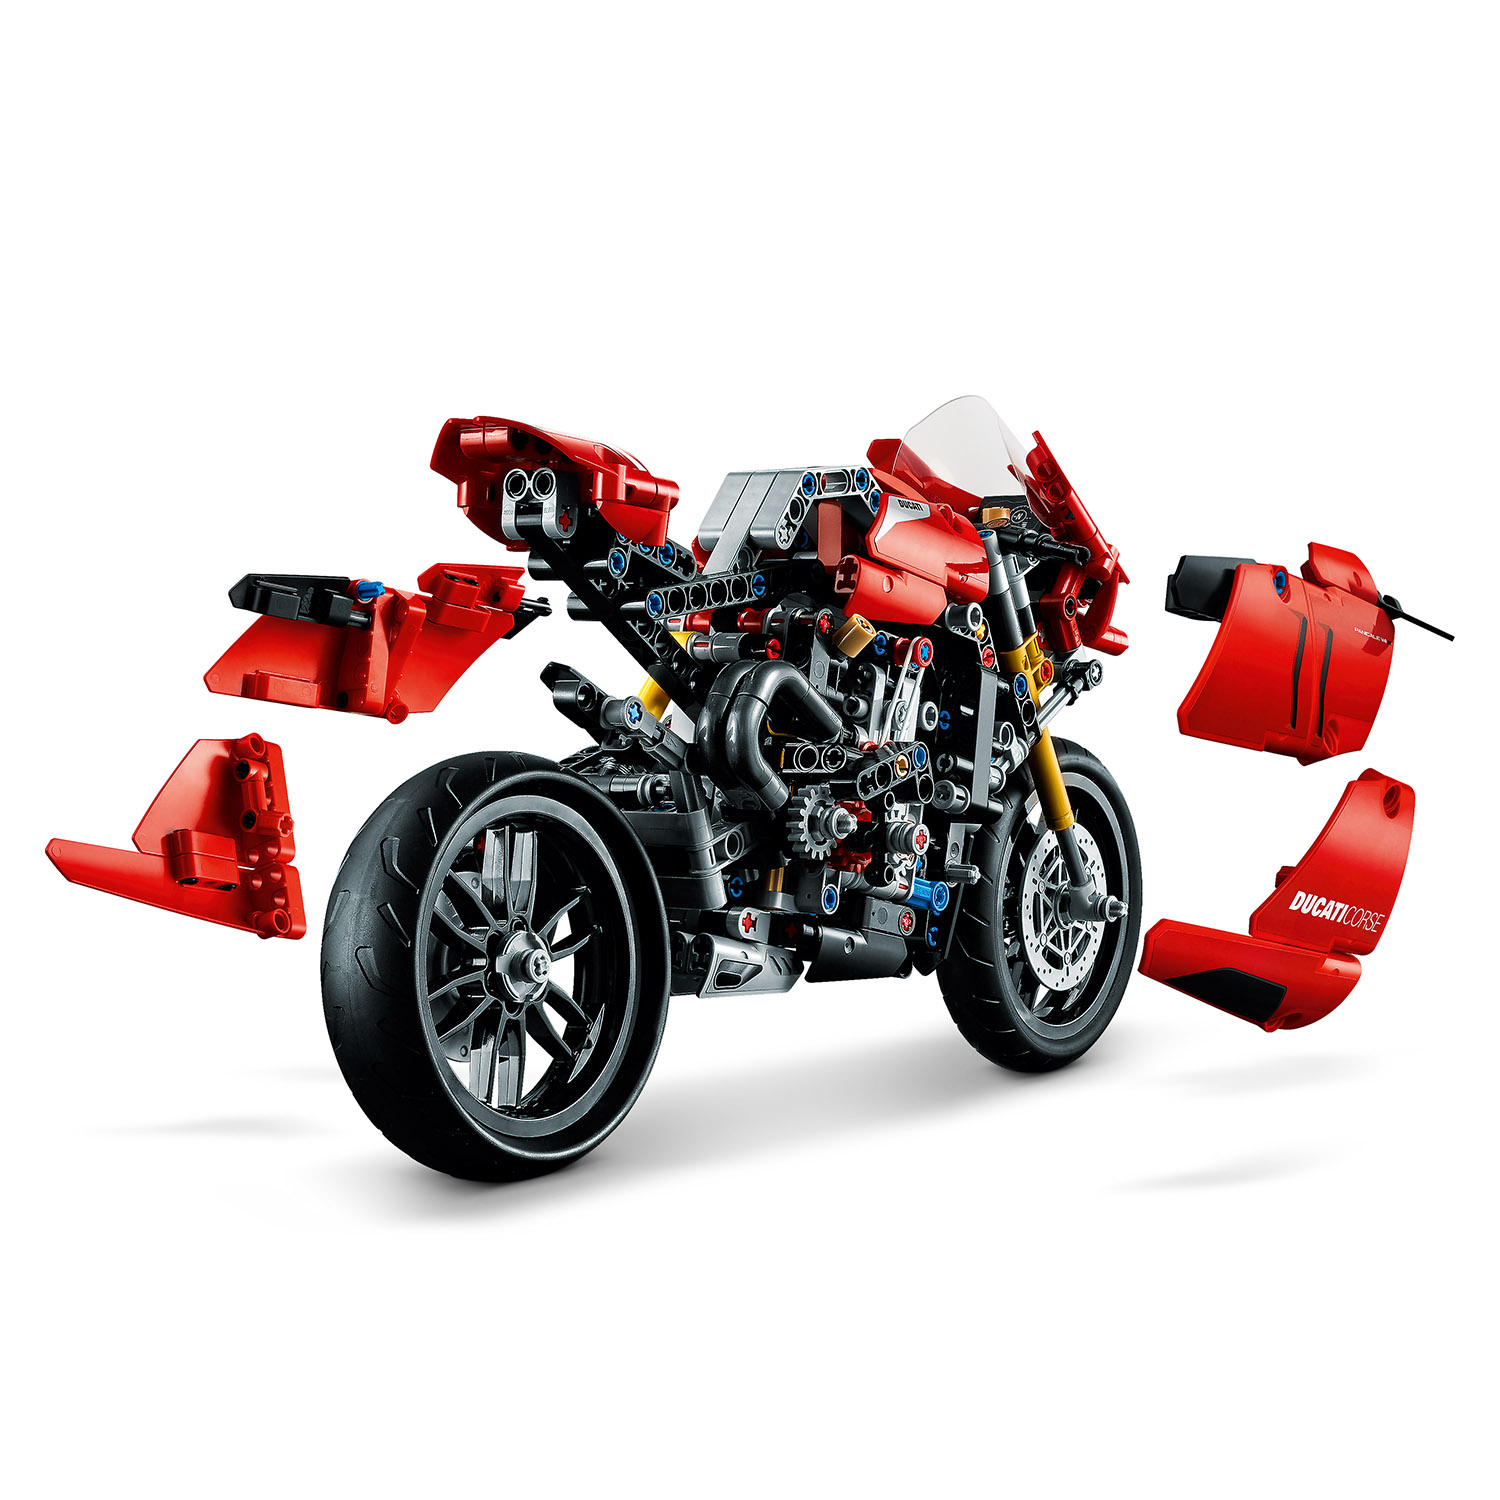 Оригинальная модель Ducati с аутентичными деталями